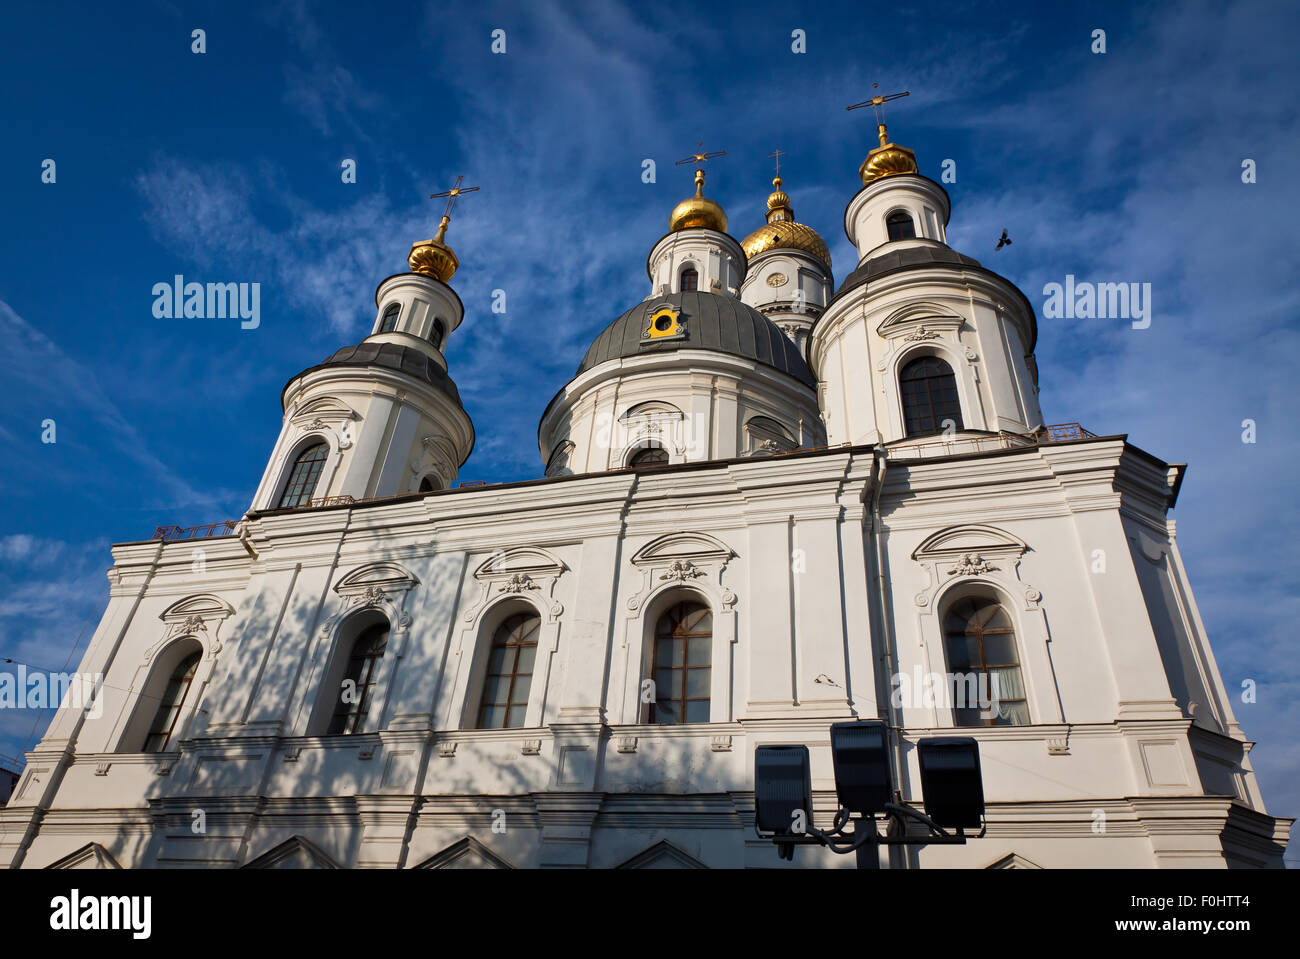 Prise en charge ou la cathédrale de la Dormition à Kharkiv, Ukraine. C'est la principale église orthodoxe de la ville de Kharkiv Banque D'Images